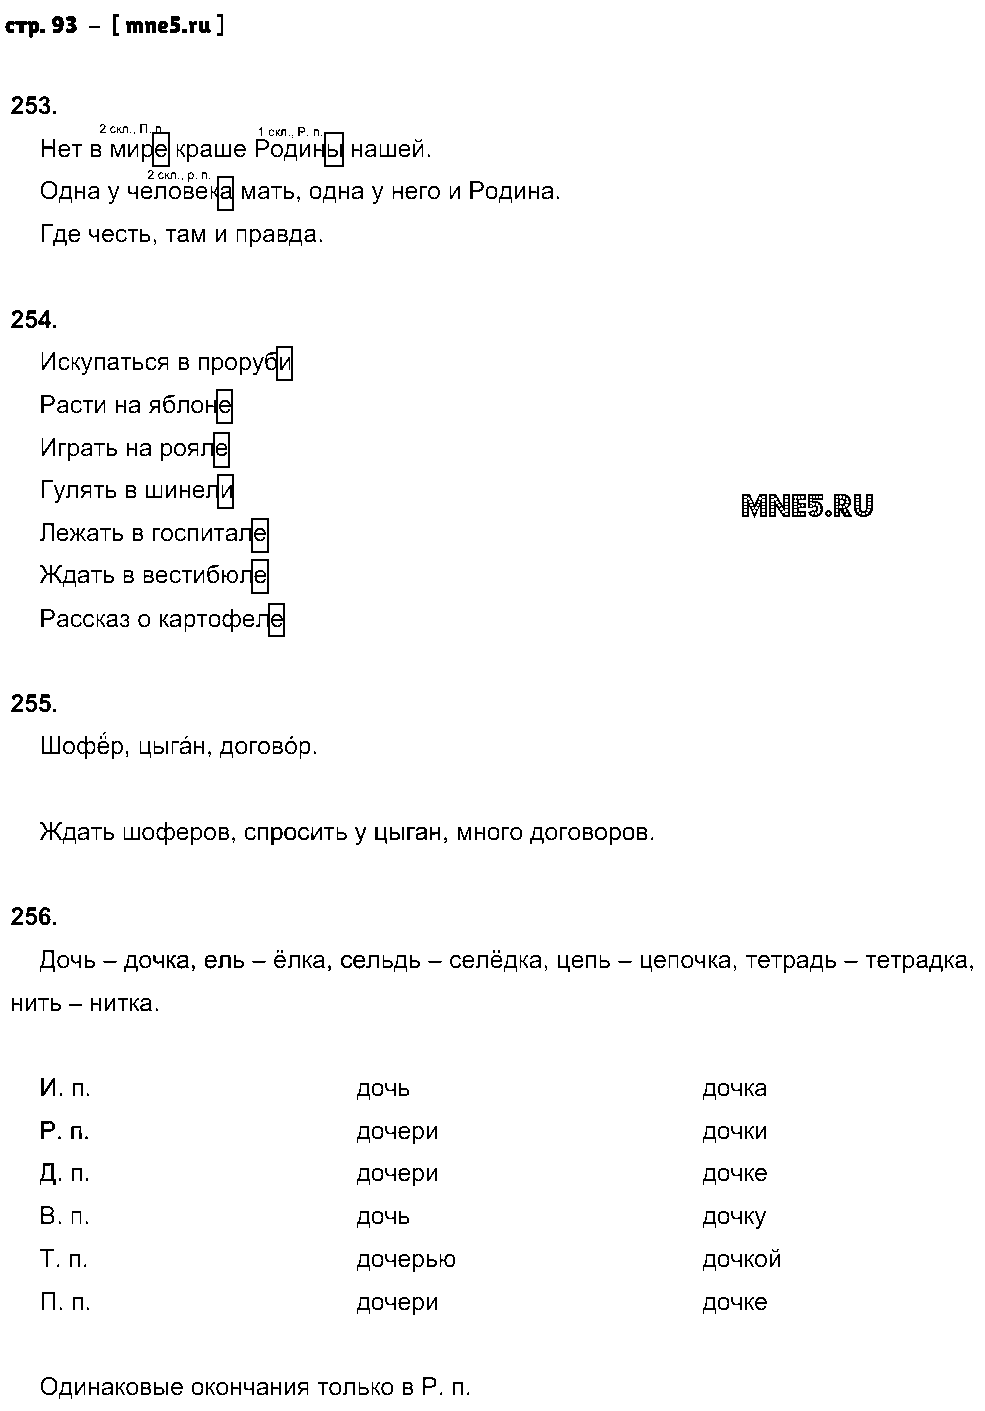 ГДЗ Русский язык 5 класс - стр. 93